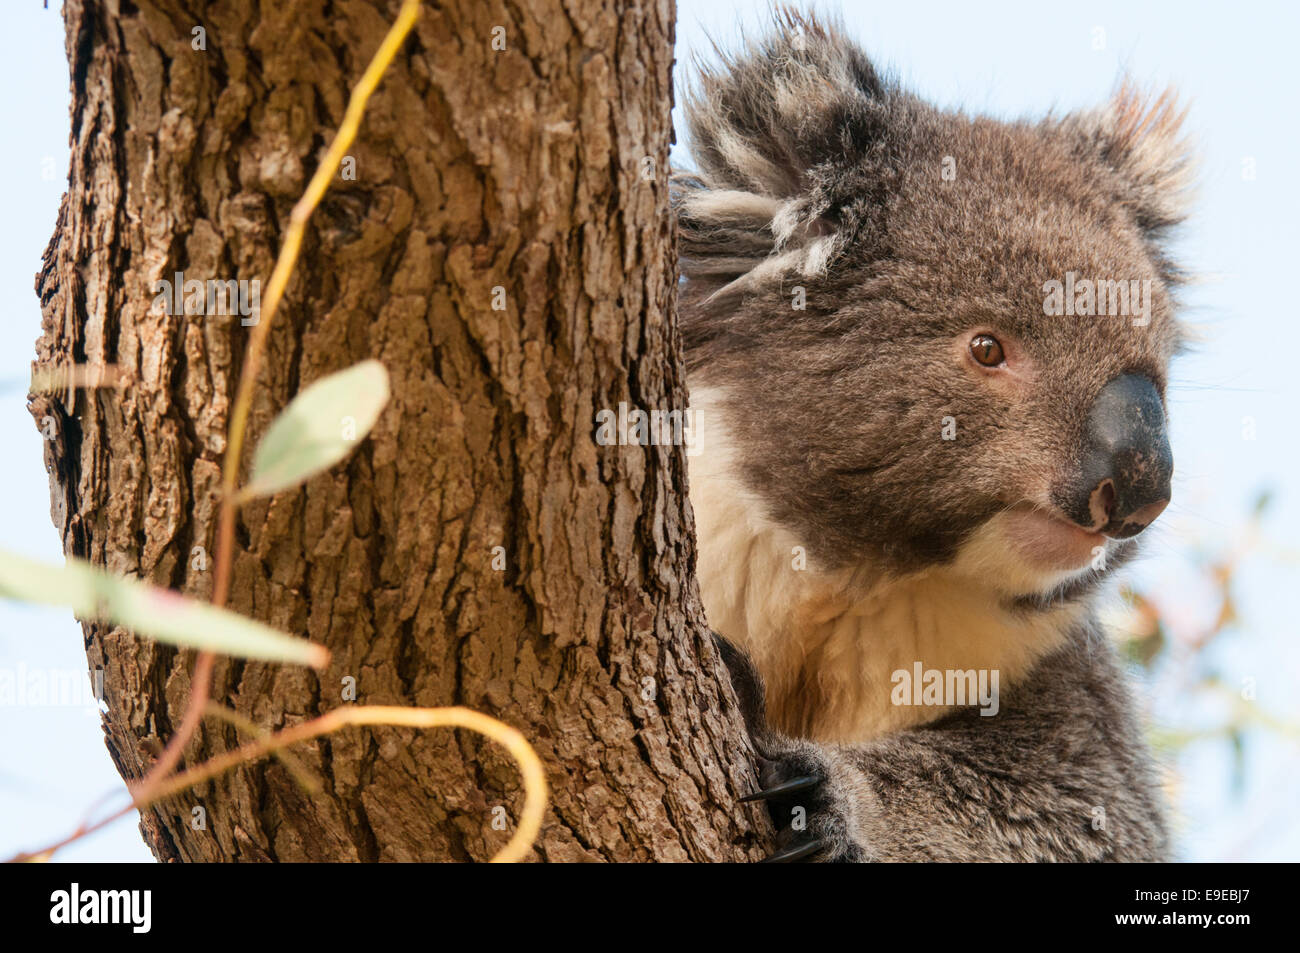 Stock photo of a koala peering from behind a tree Stock Photo